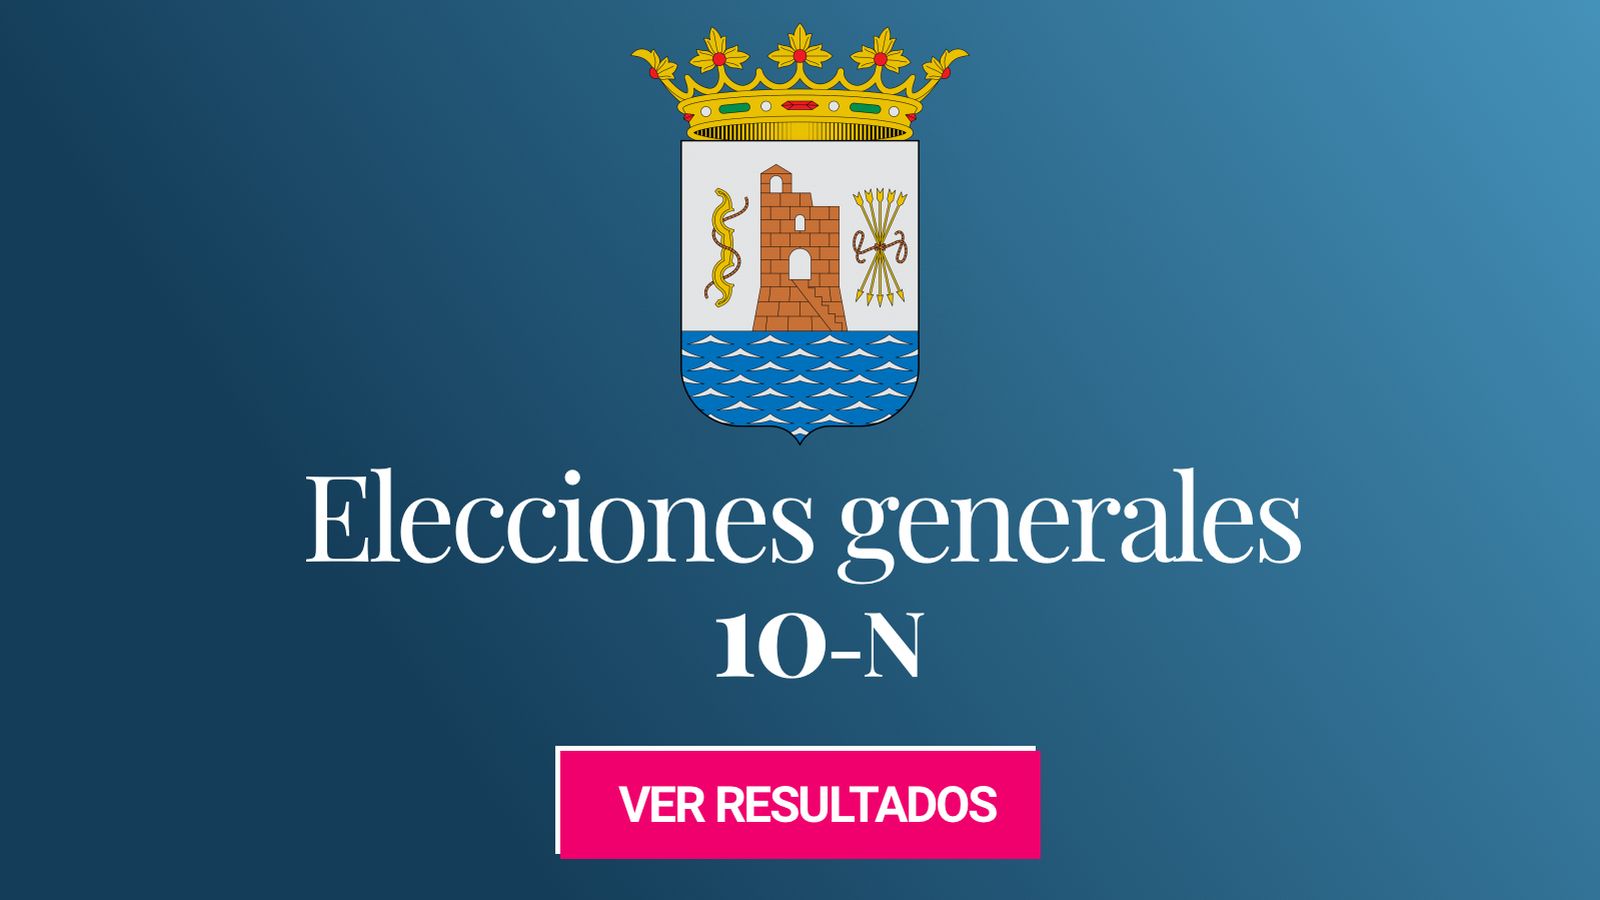 Foto: Elecciones generales 2019 en Marbella. (C.C./EC)